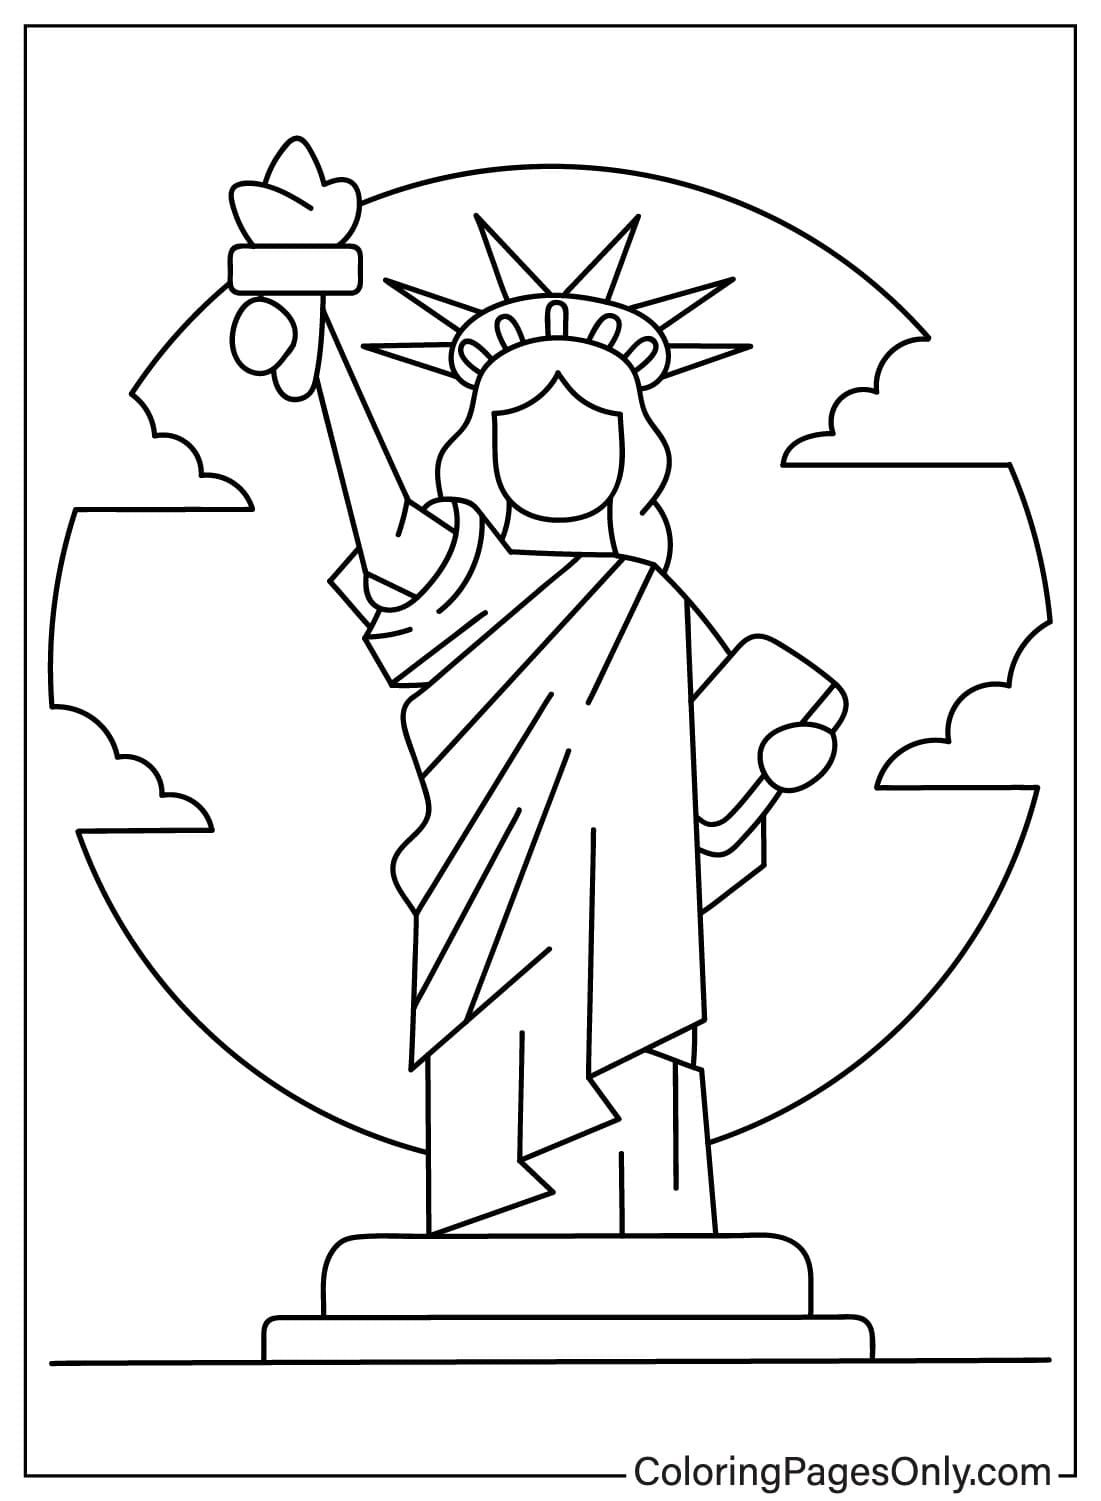 Página para colorear de la Estatua de la Libertad para niños en edad preescolar de Estatua de la Libertad